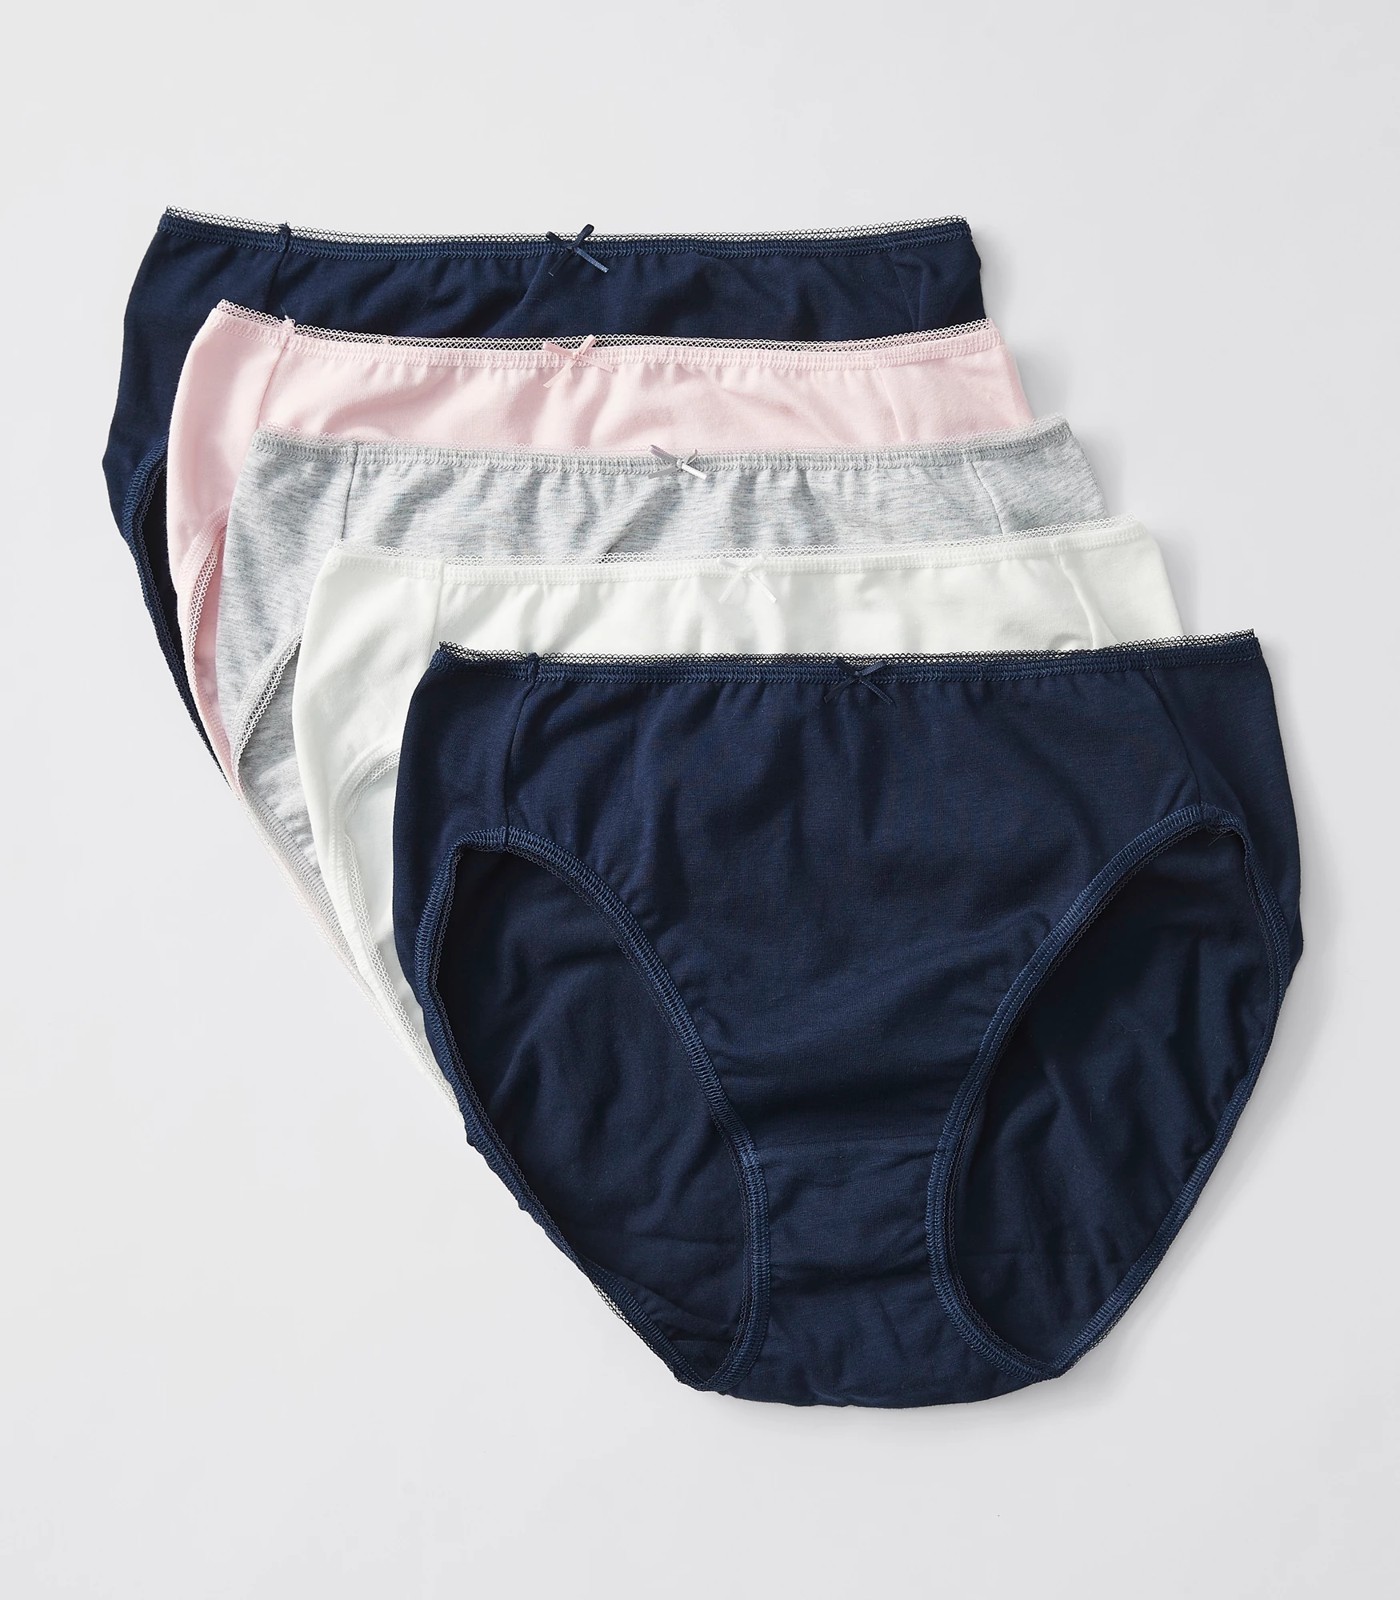 5-Pack of classic cotton briefs - Underwear - UNDERWEAR, PYJAMAS - Woman 